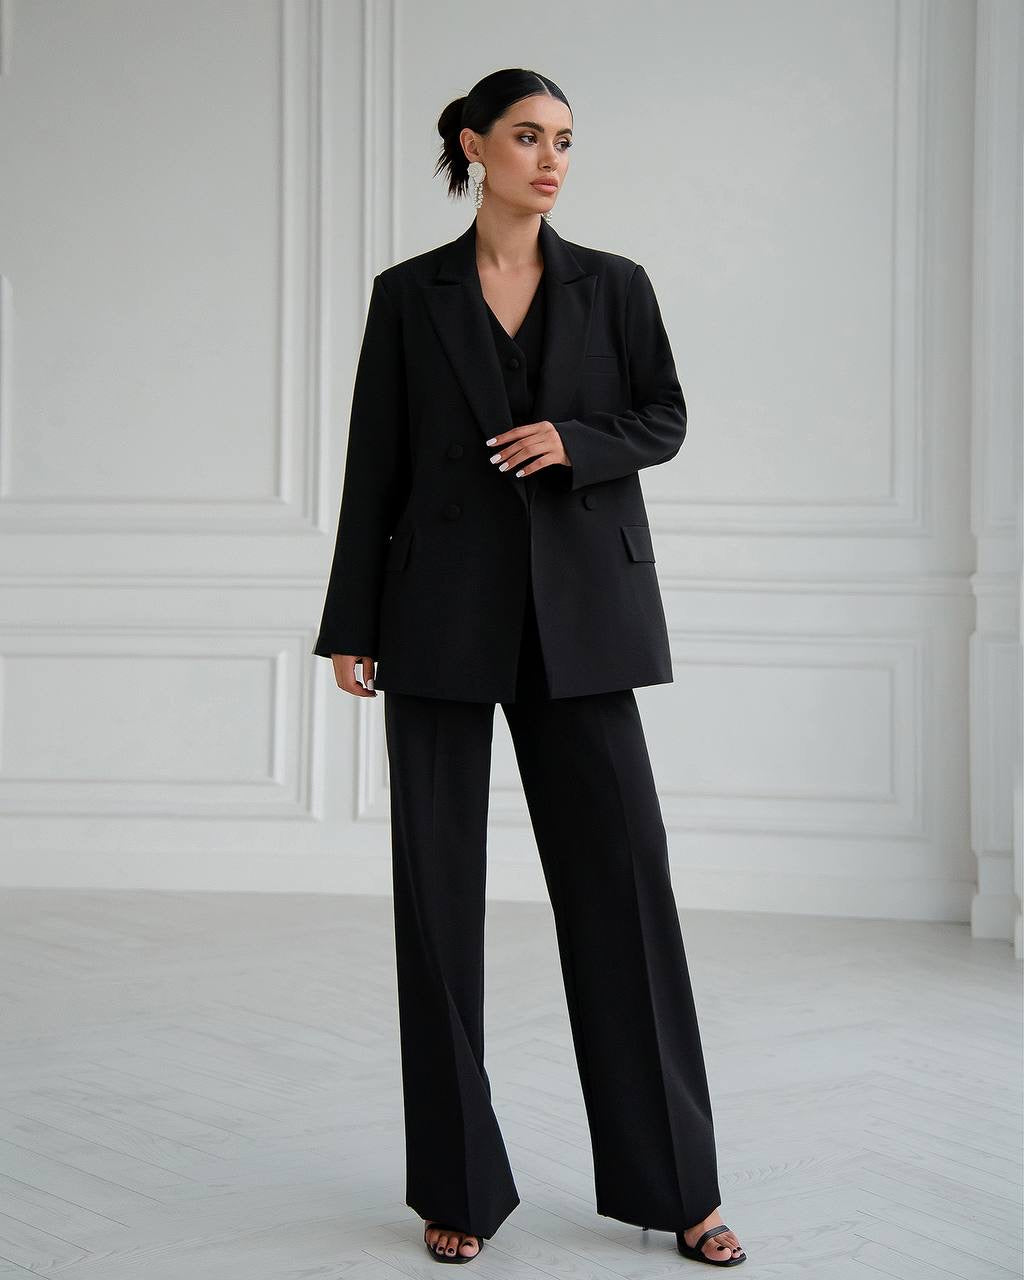 Black three piece suit "Ultra classy"